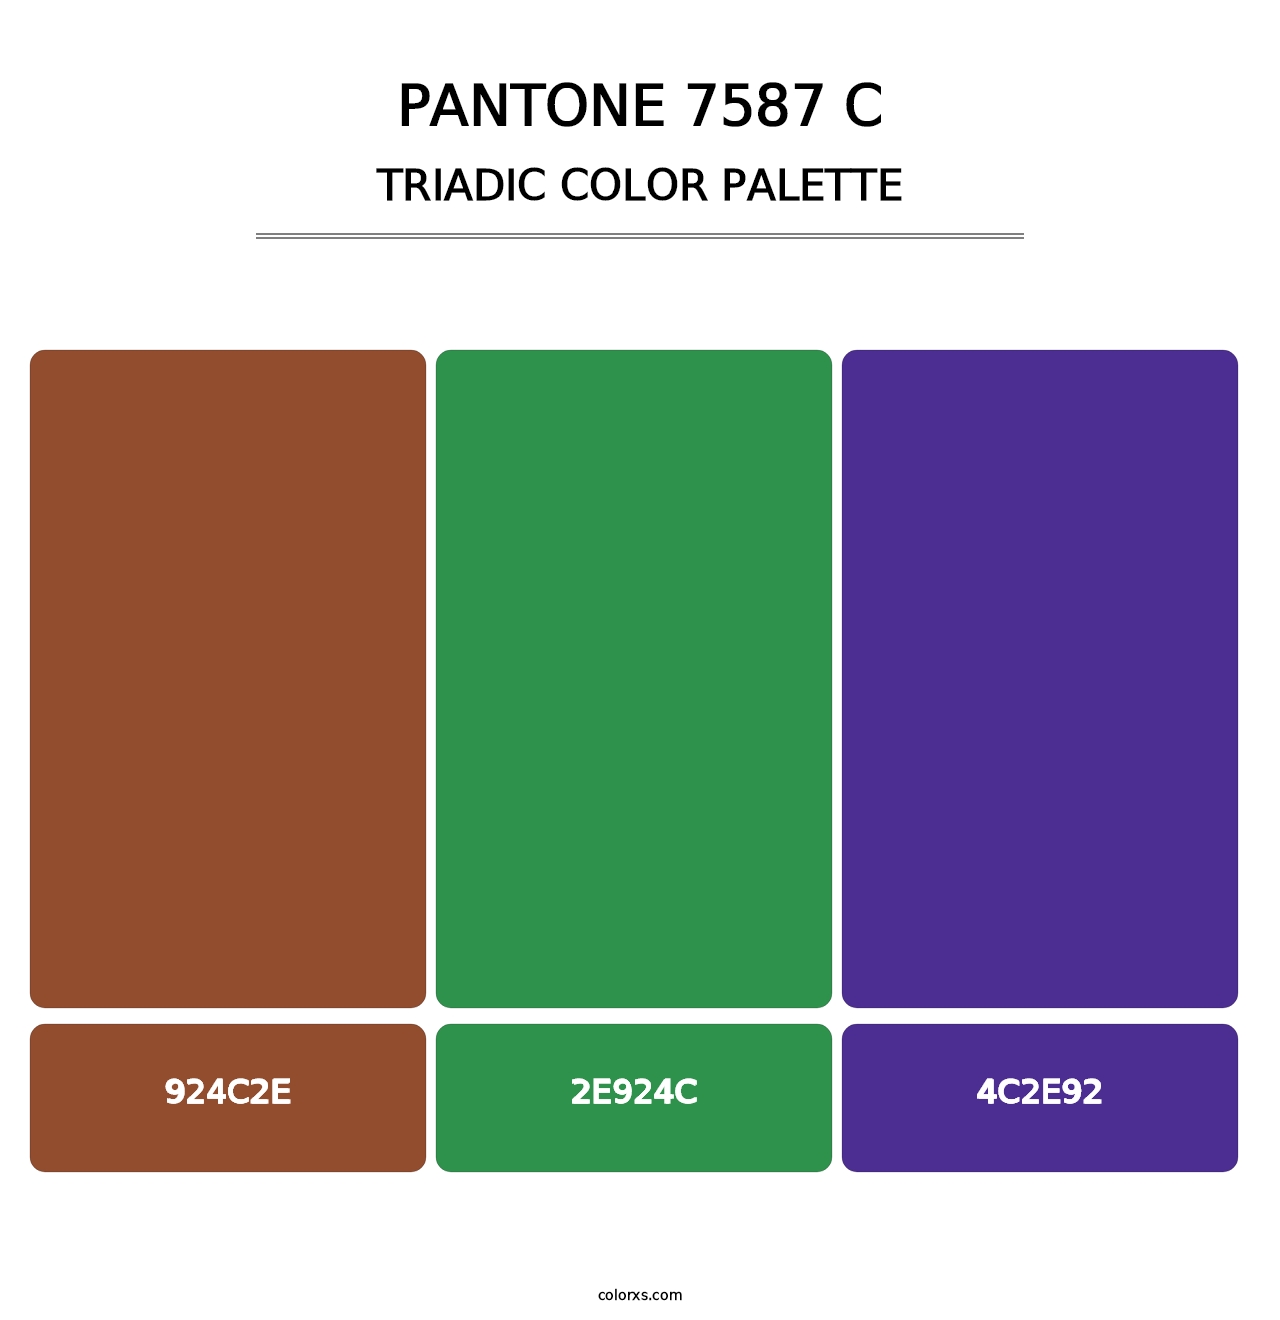 PANTONE 7587 C - Triadic Color Palette